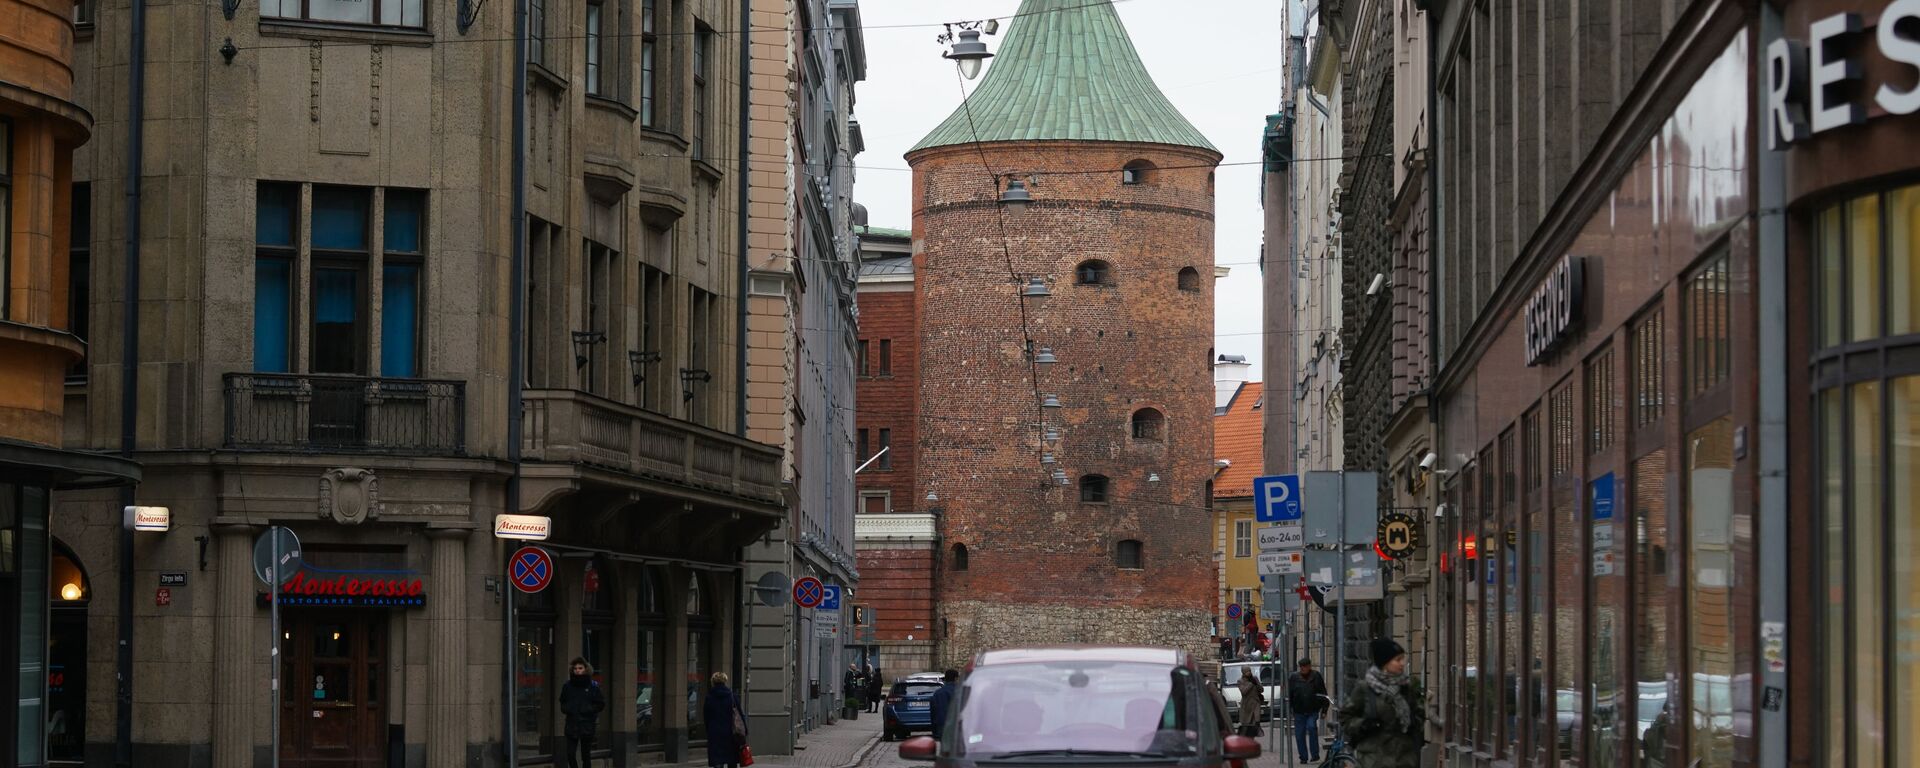 Пороховая башня и улица Вальню в Риге - Sputnik Латвия, 1920, 13.08.2021